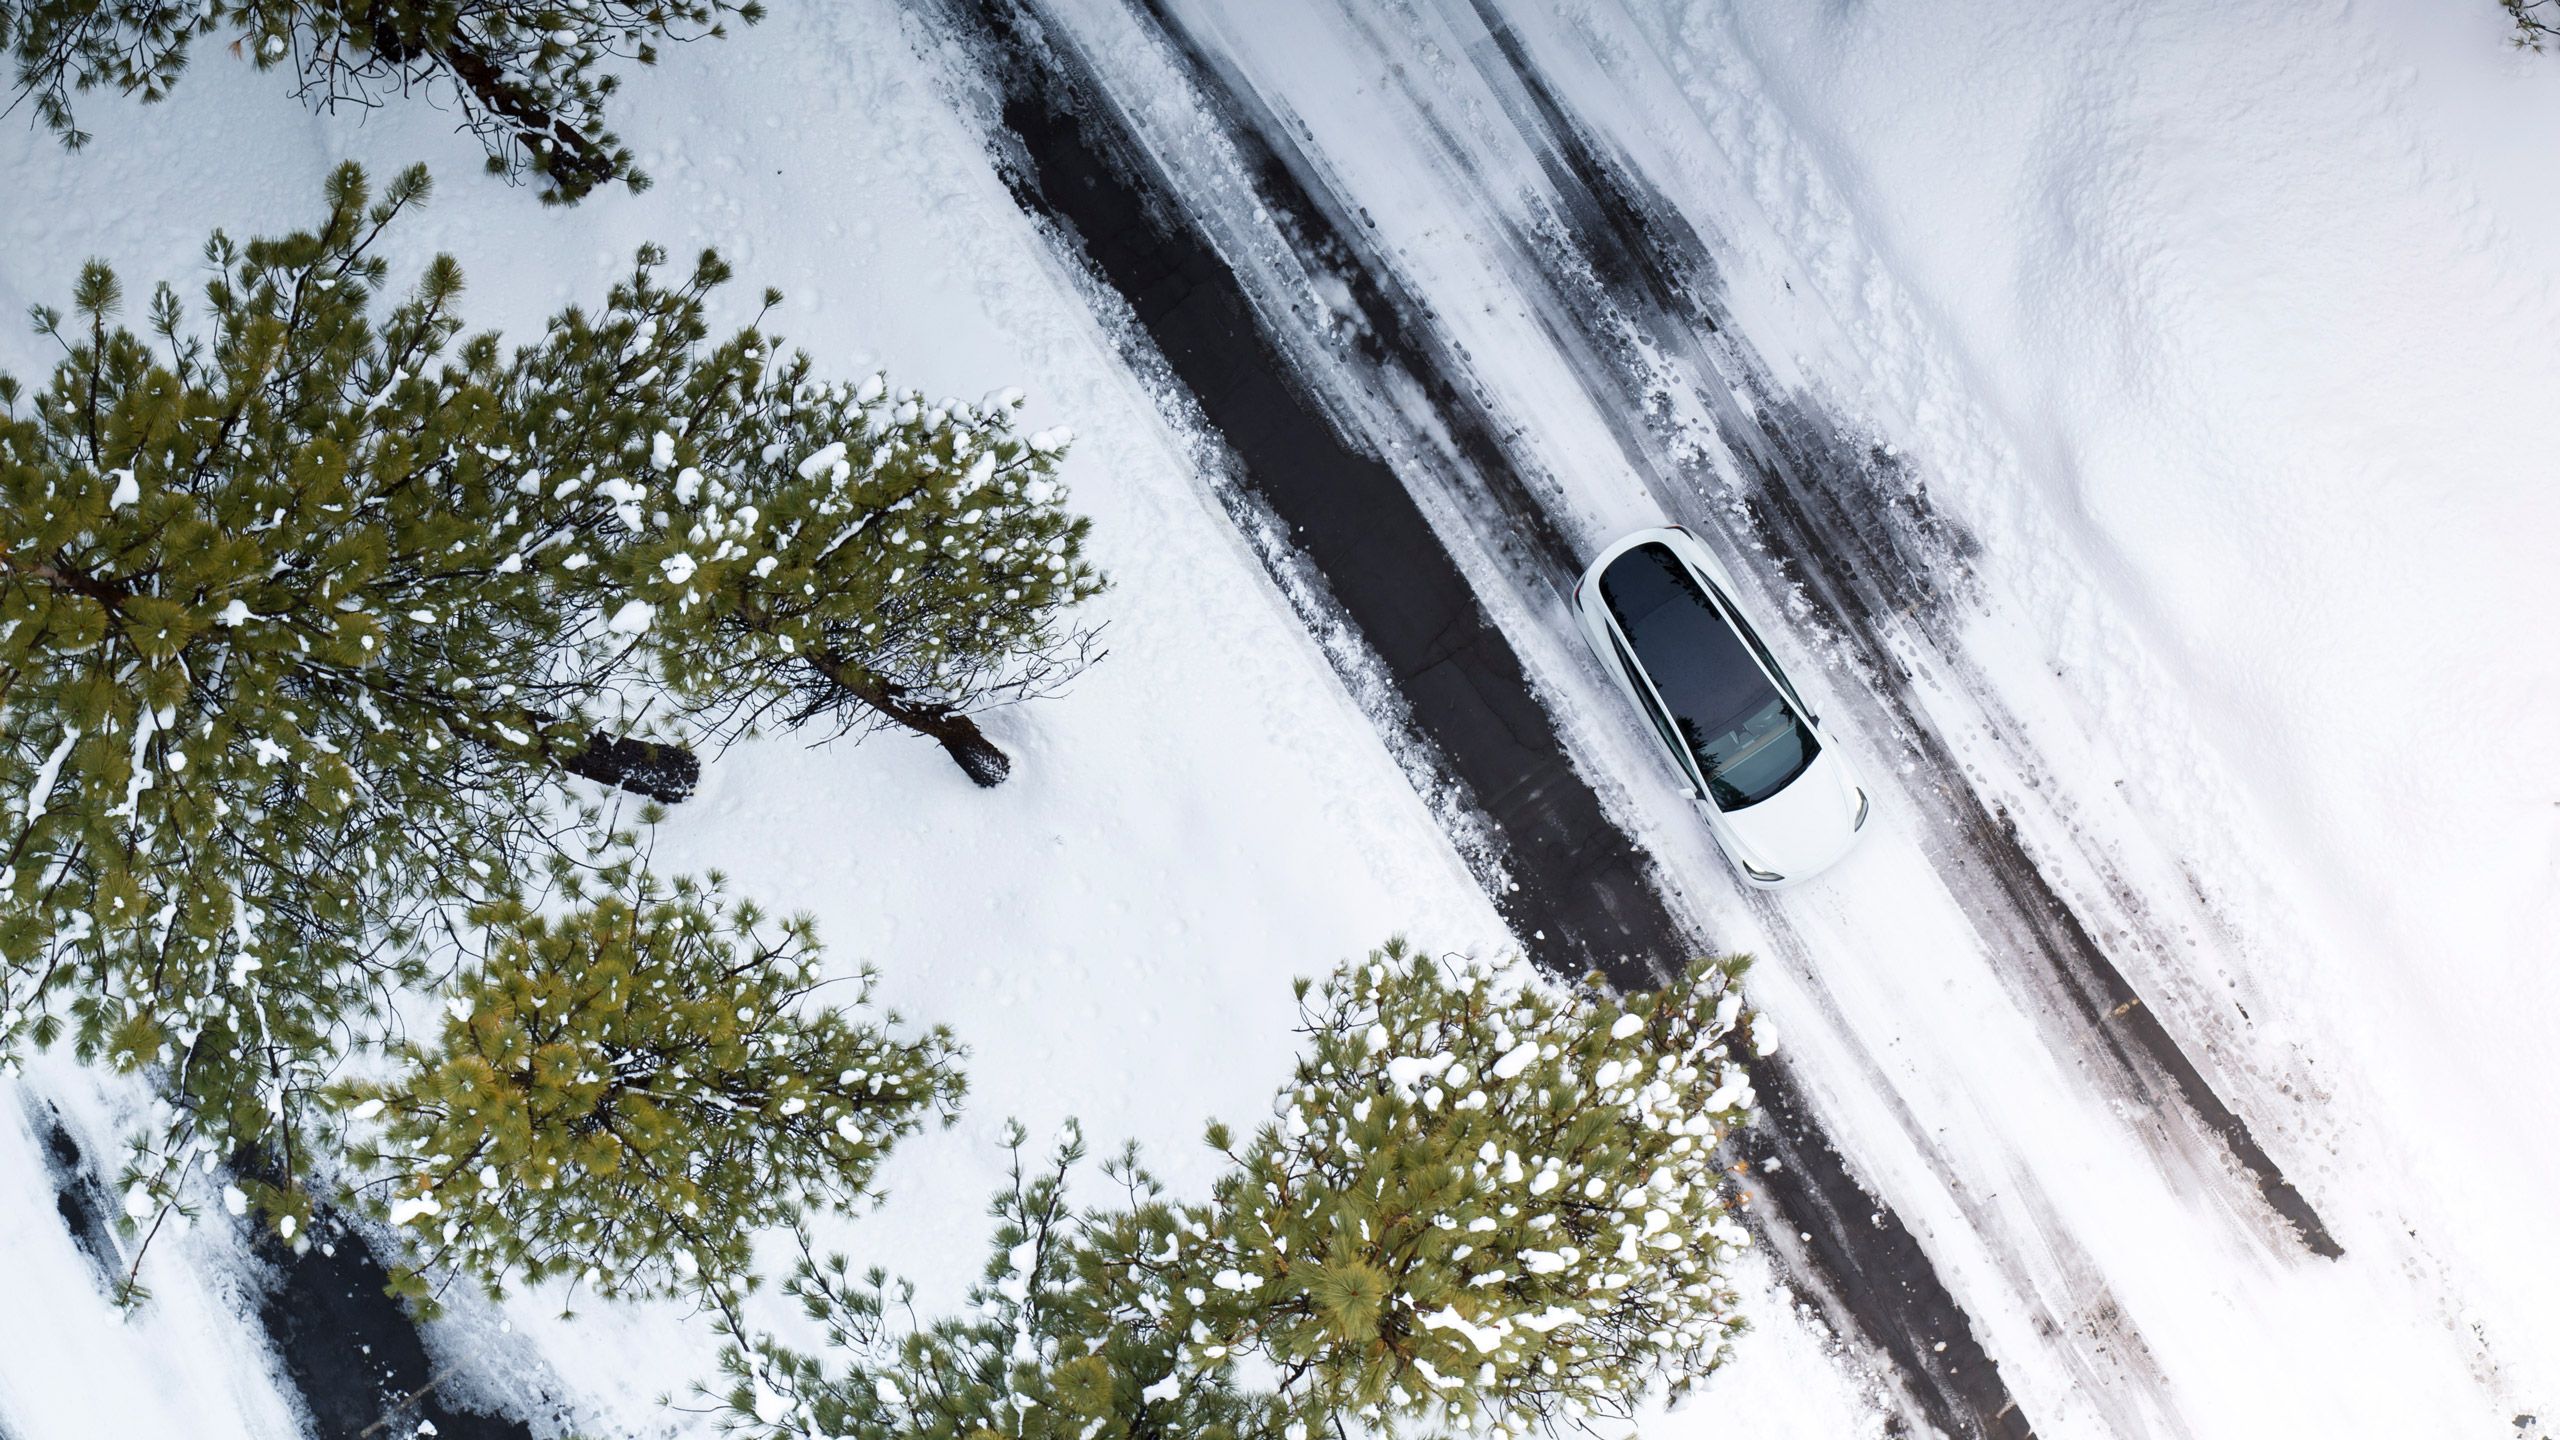 ایک سفید Tesla ماڈل Y ایک برفیلی سڑک پر سفر کر رہا ہے جس کی طرف دیودار کے درخت ہیں۔